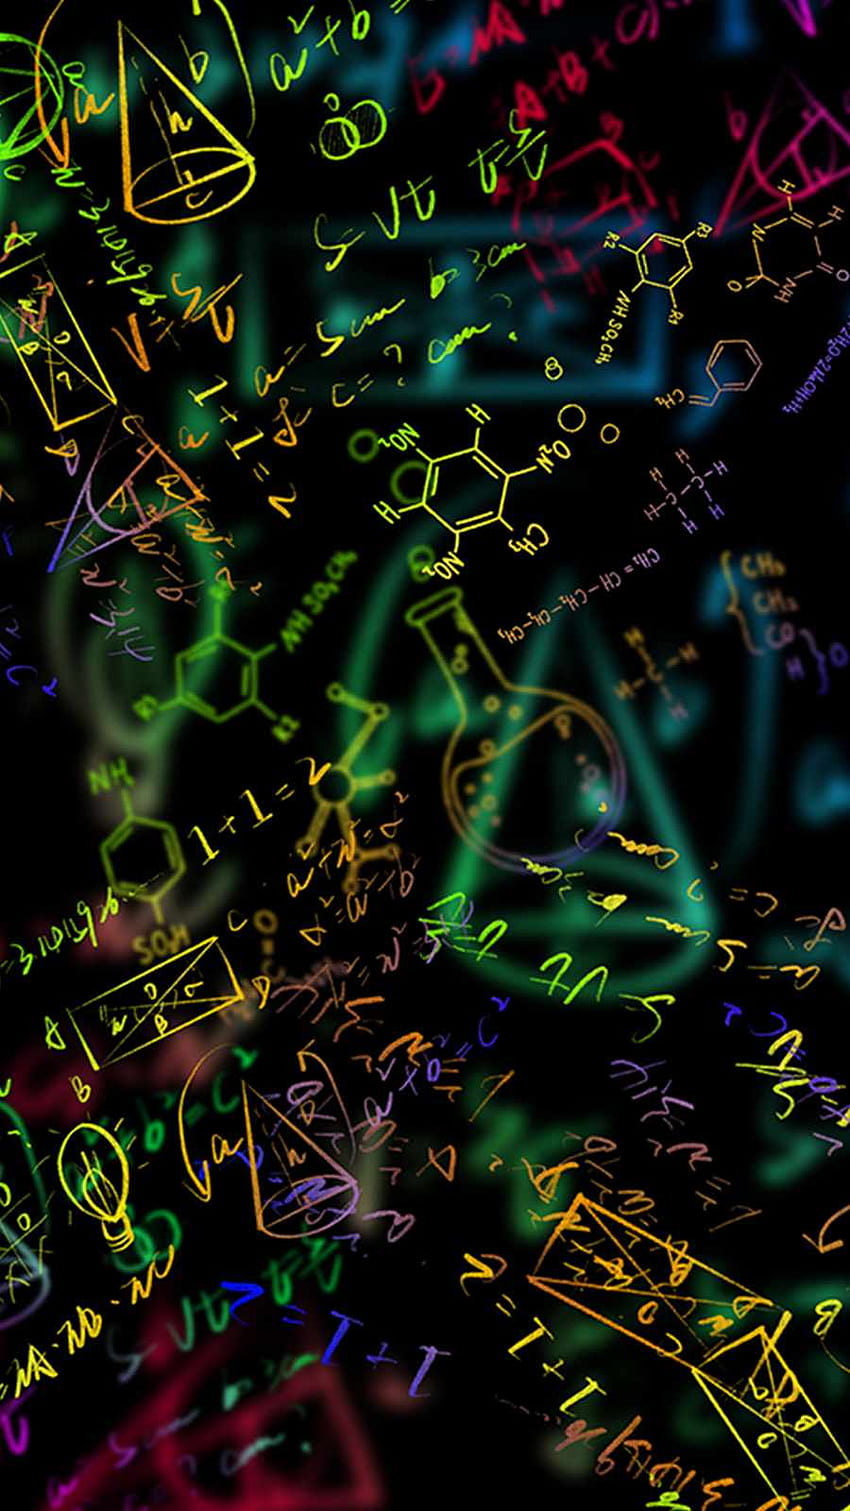 Química Y Matemáticas IPhone - IPhone : iPhone , Matemáticas iPhone fondo de pantalla del teléfono